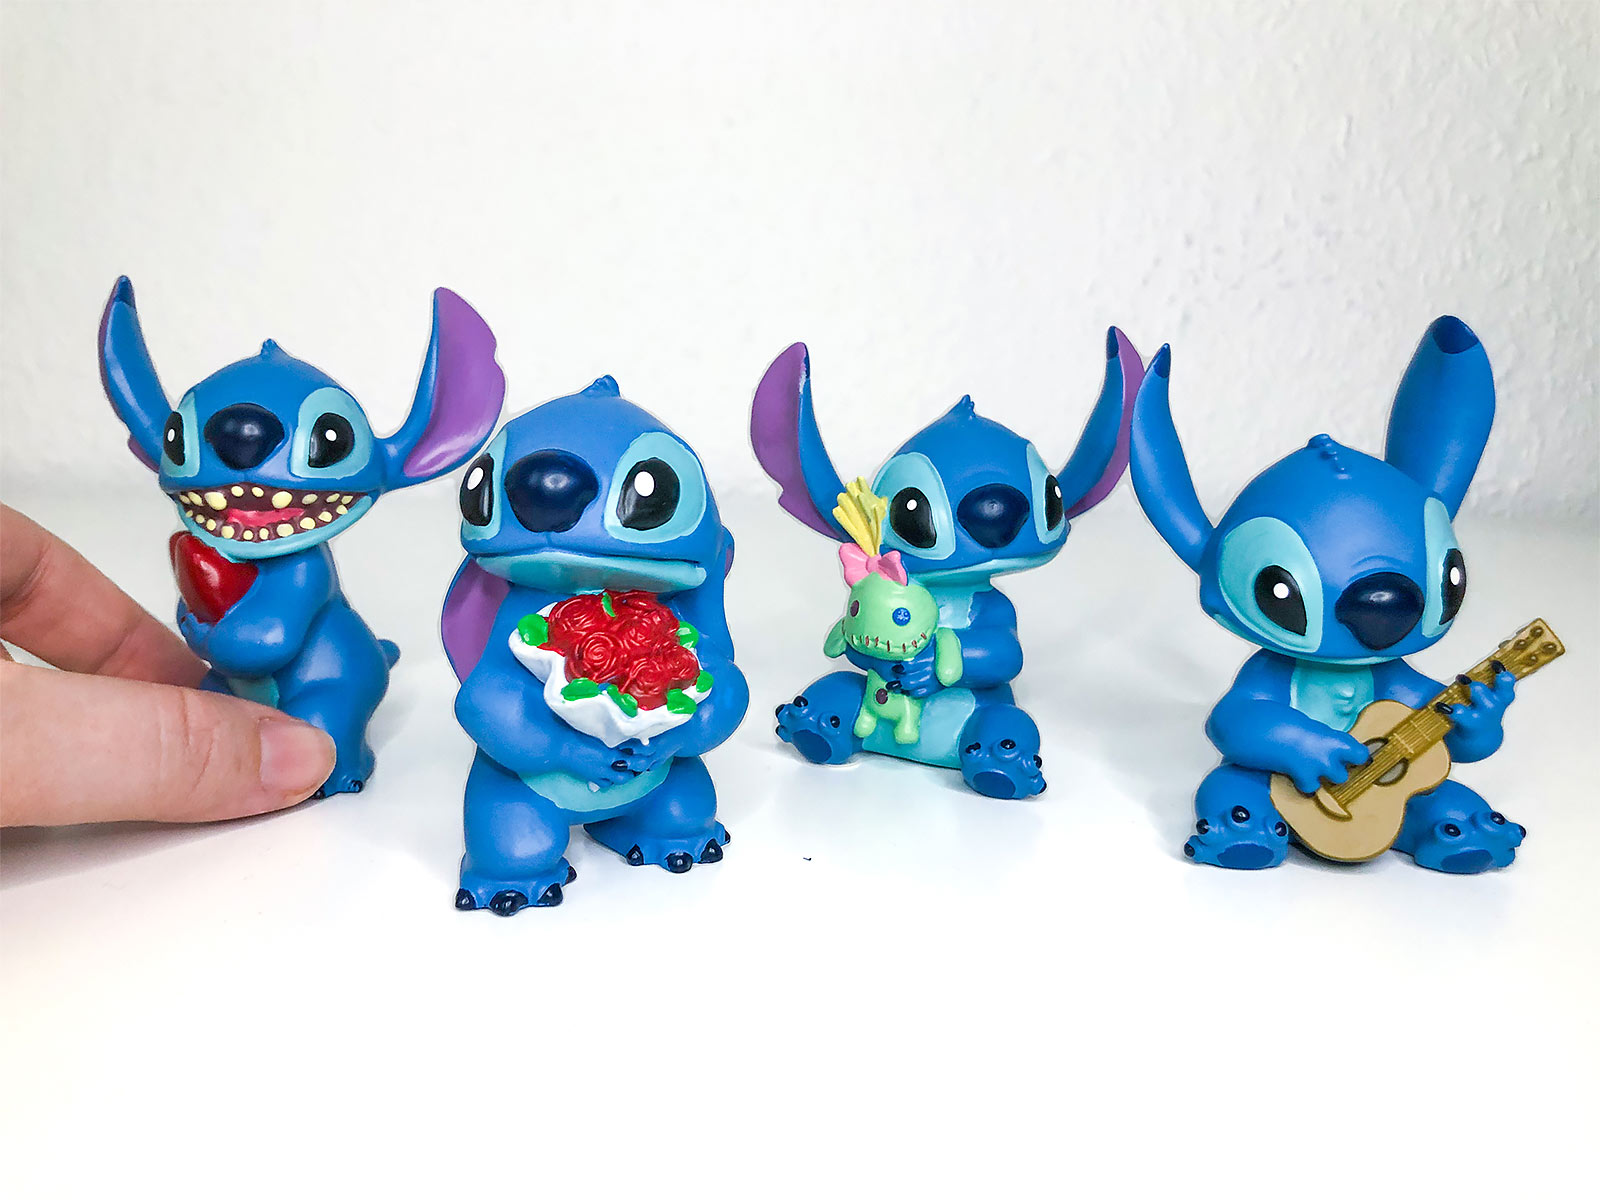 Lilo & Stitch - Stitch Figur mit Rosen